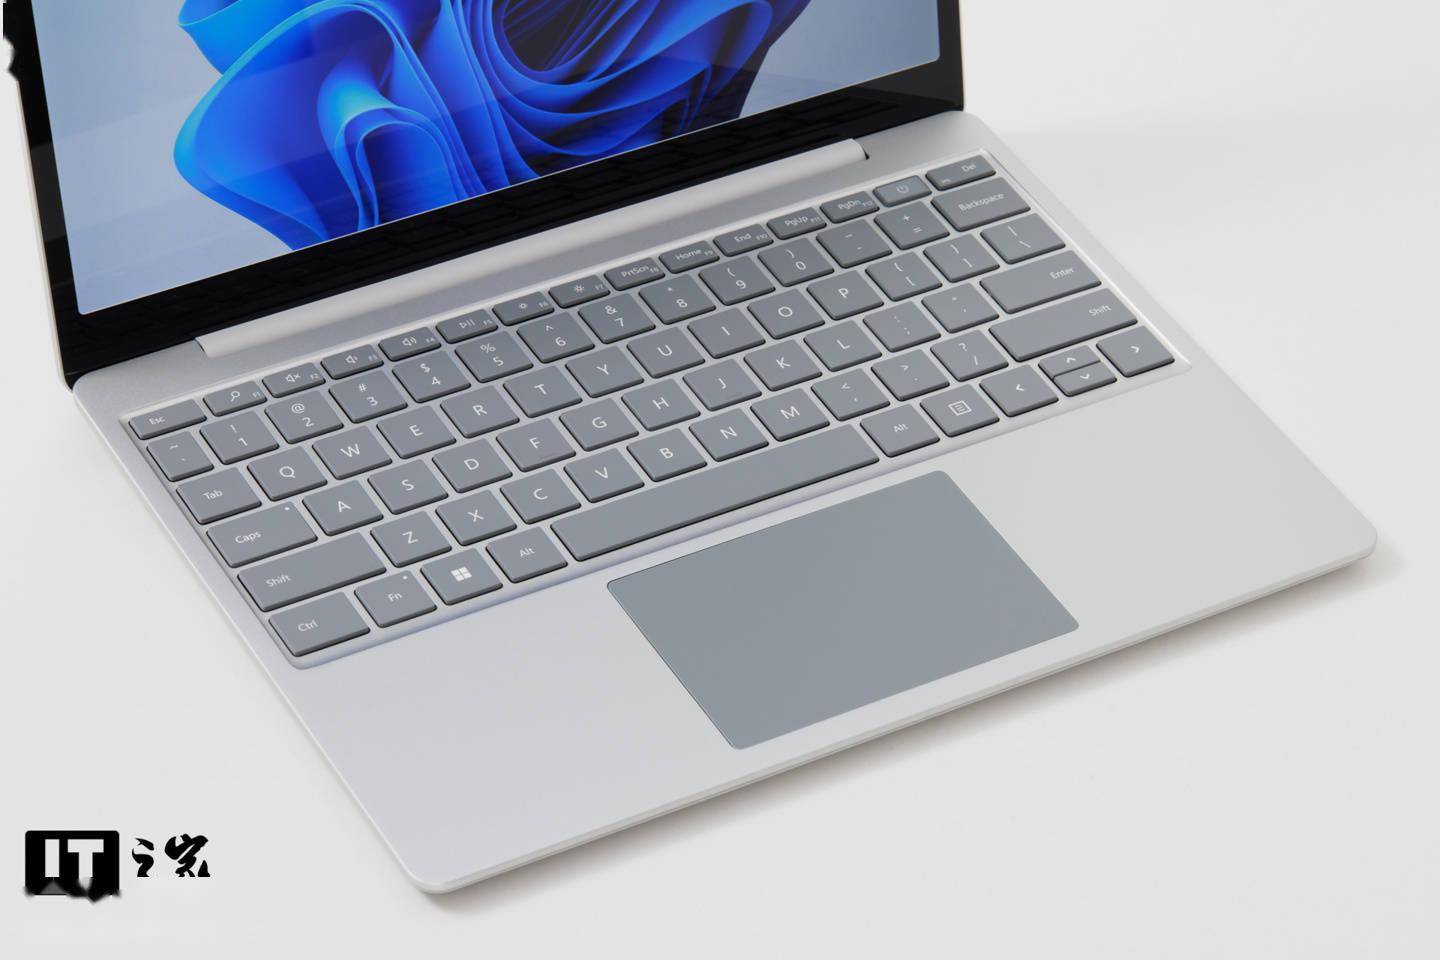 【it之家开箱】微软 surface laptop go 2 亮铂金图赏